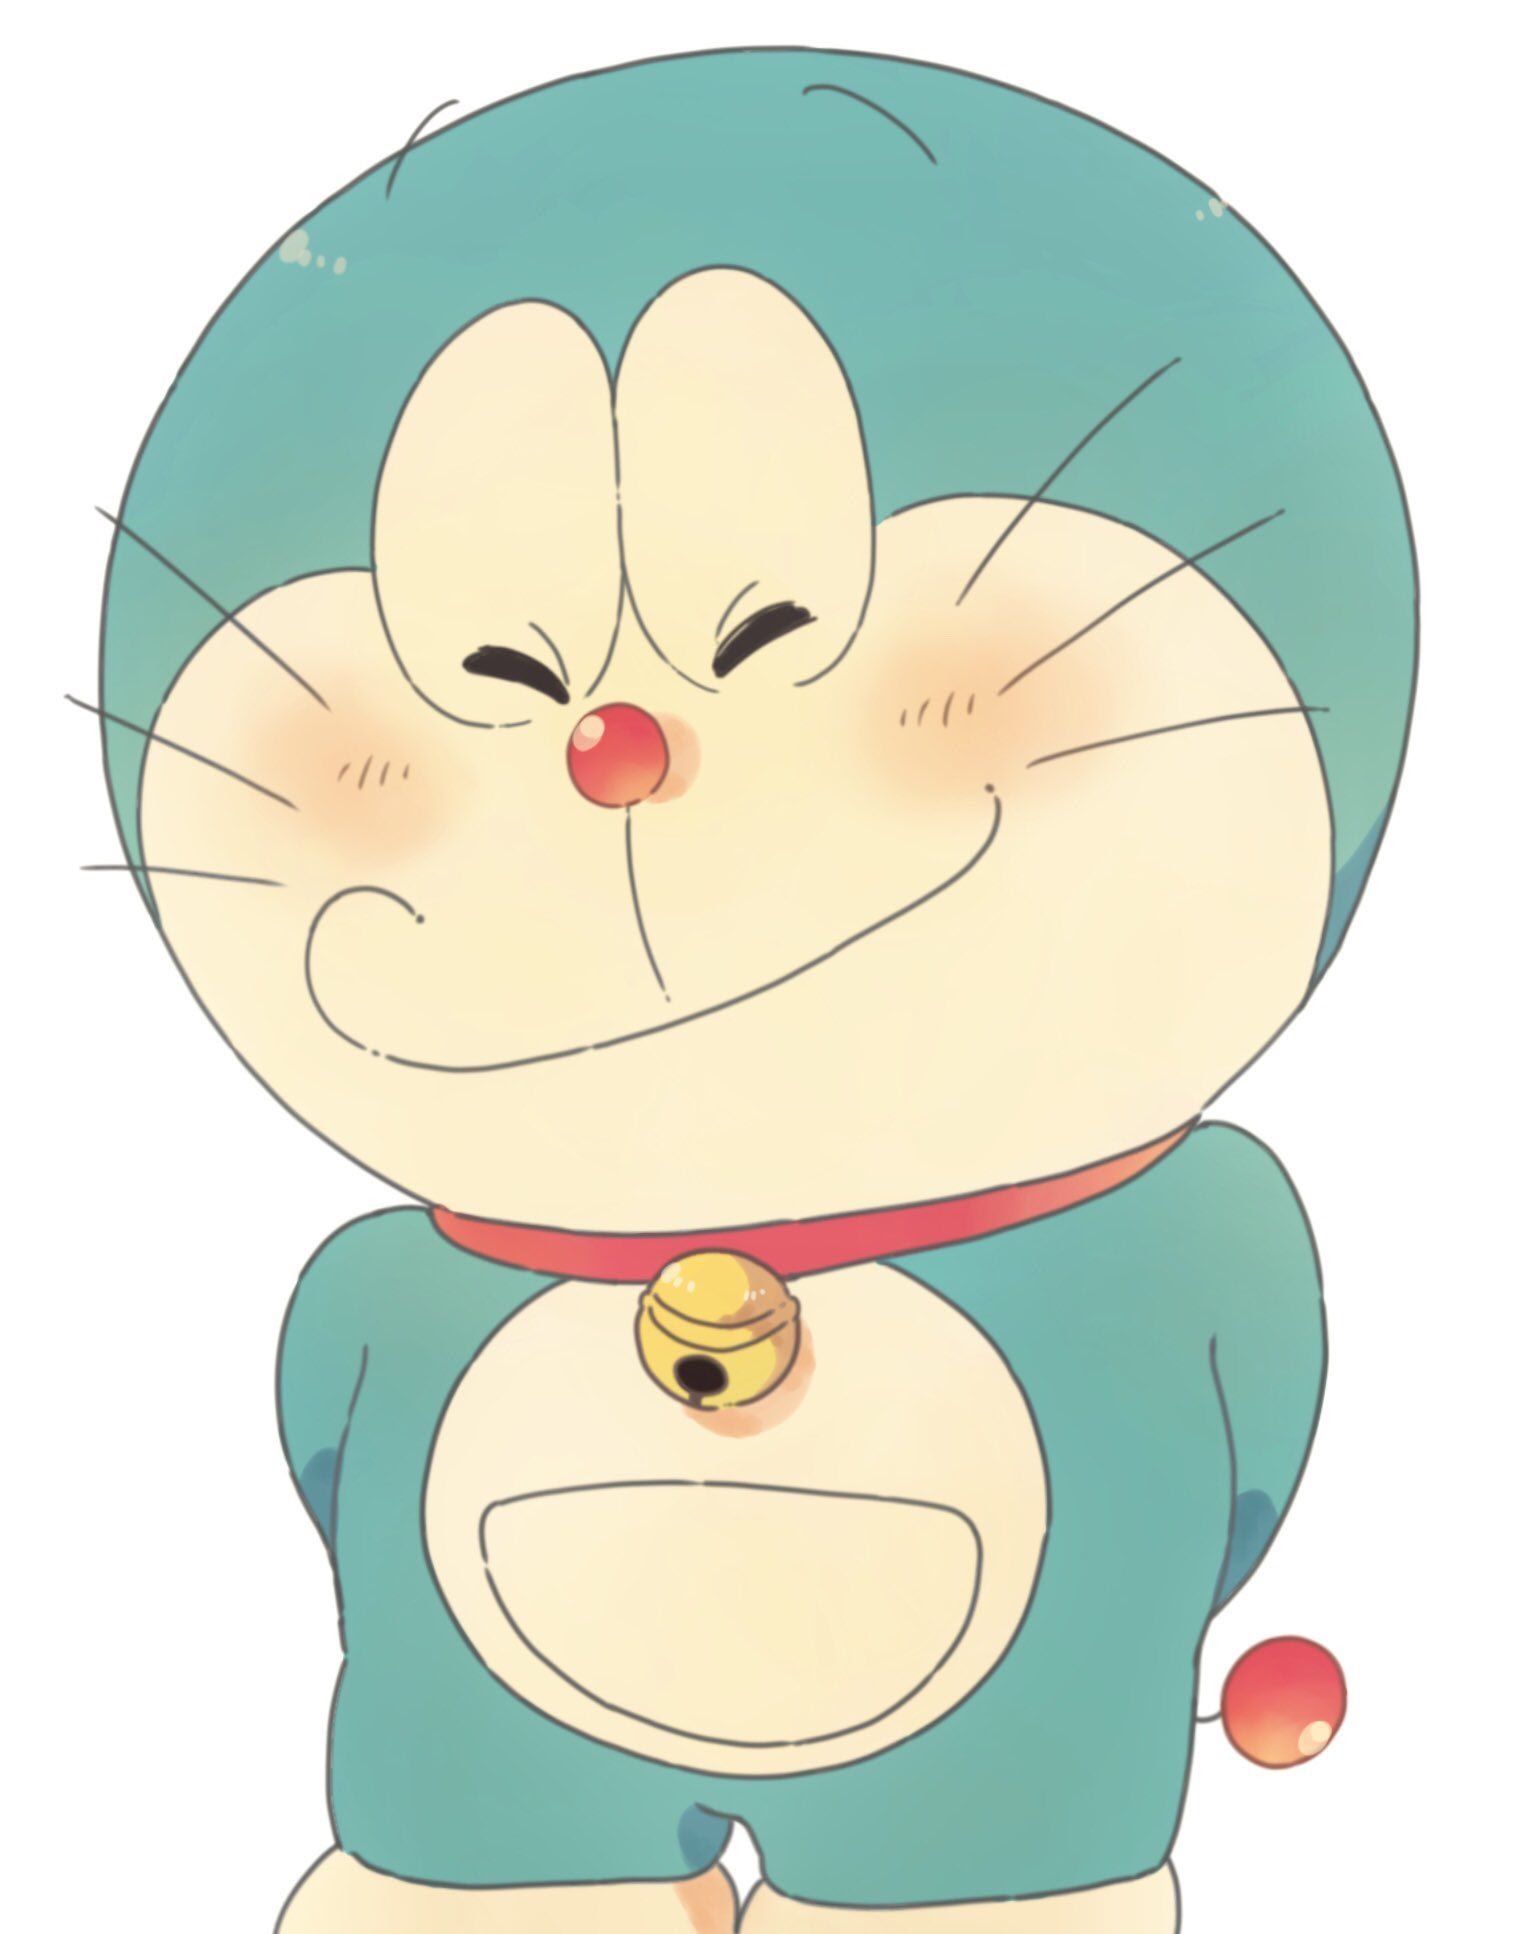 Sự thật thú vị về Doraemon: Nếu bạn là một fan của Doraemon, hãy xem ngay bức ảnh này để khám phá những sự thật thú vị về chú mèo máy thông minh này. Bạn sẽ được biết thêm về những câu chuyện đầy phiêu lưu của Doraemon, cũng như những bí mật về quá trình tạo ra nhân vật này.